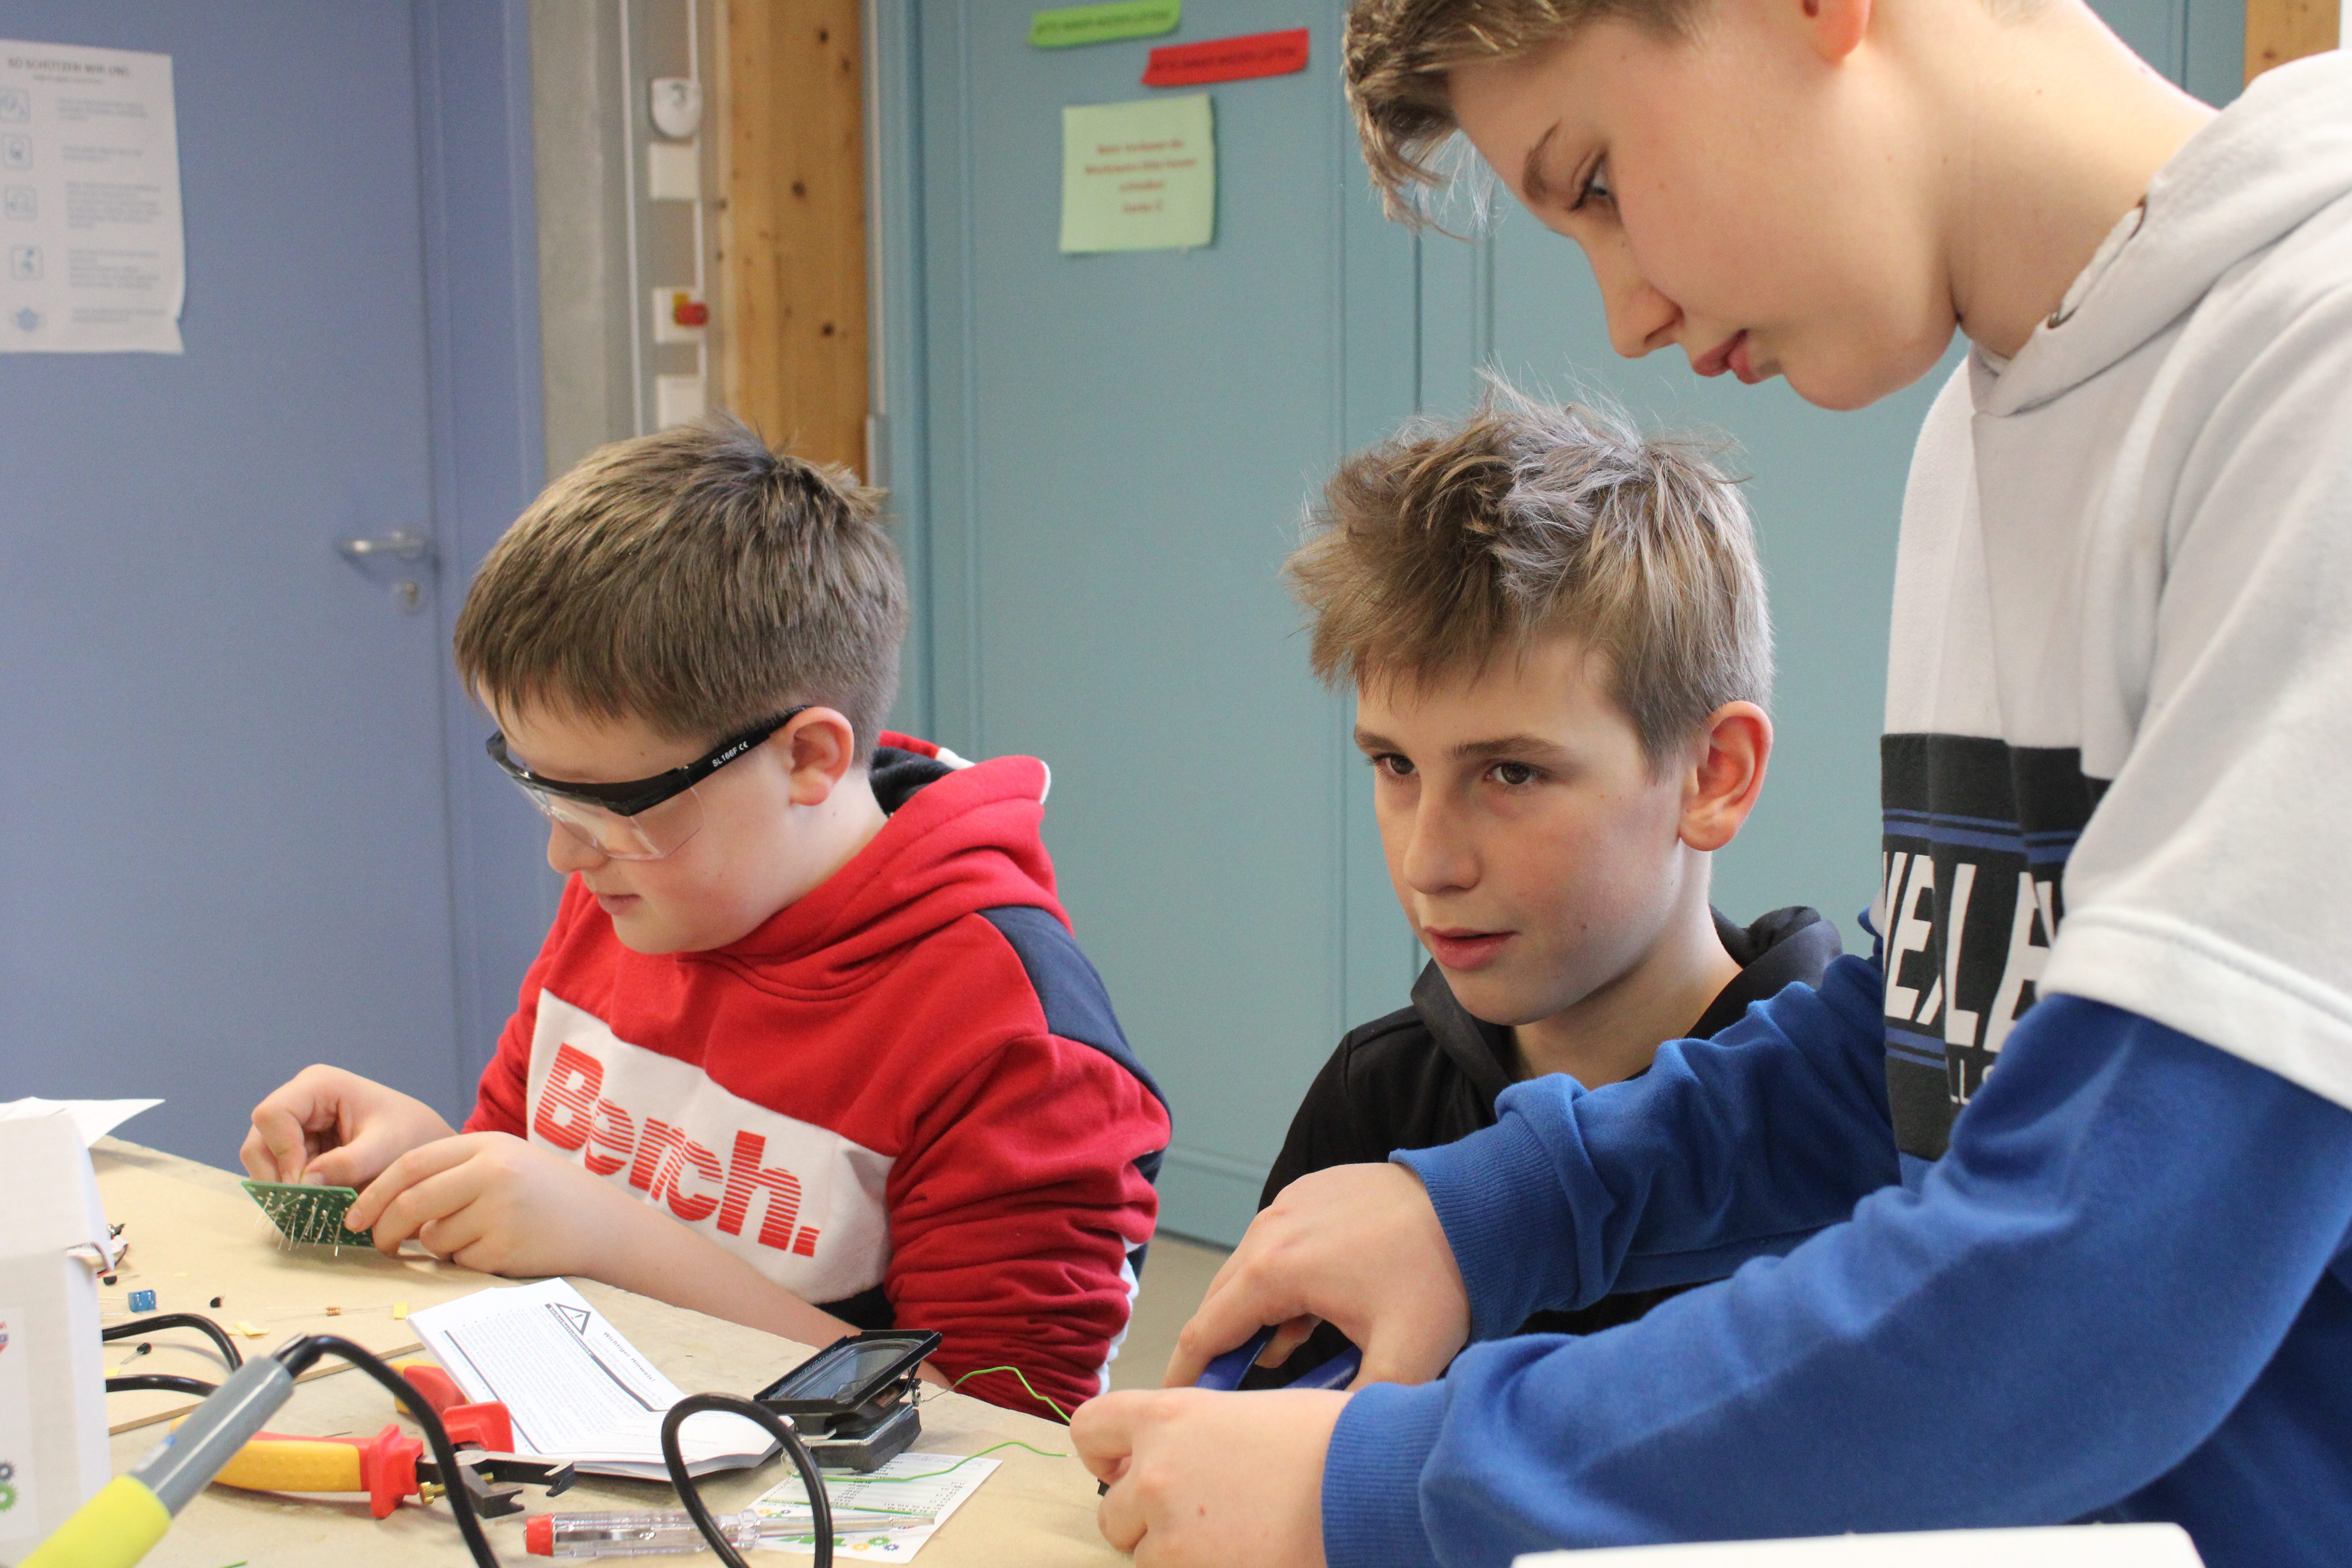 "SET - Schüler entdecken Technik" an der Realschule Ortenburg